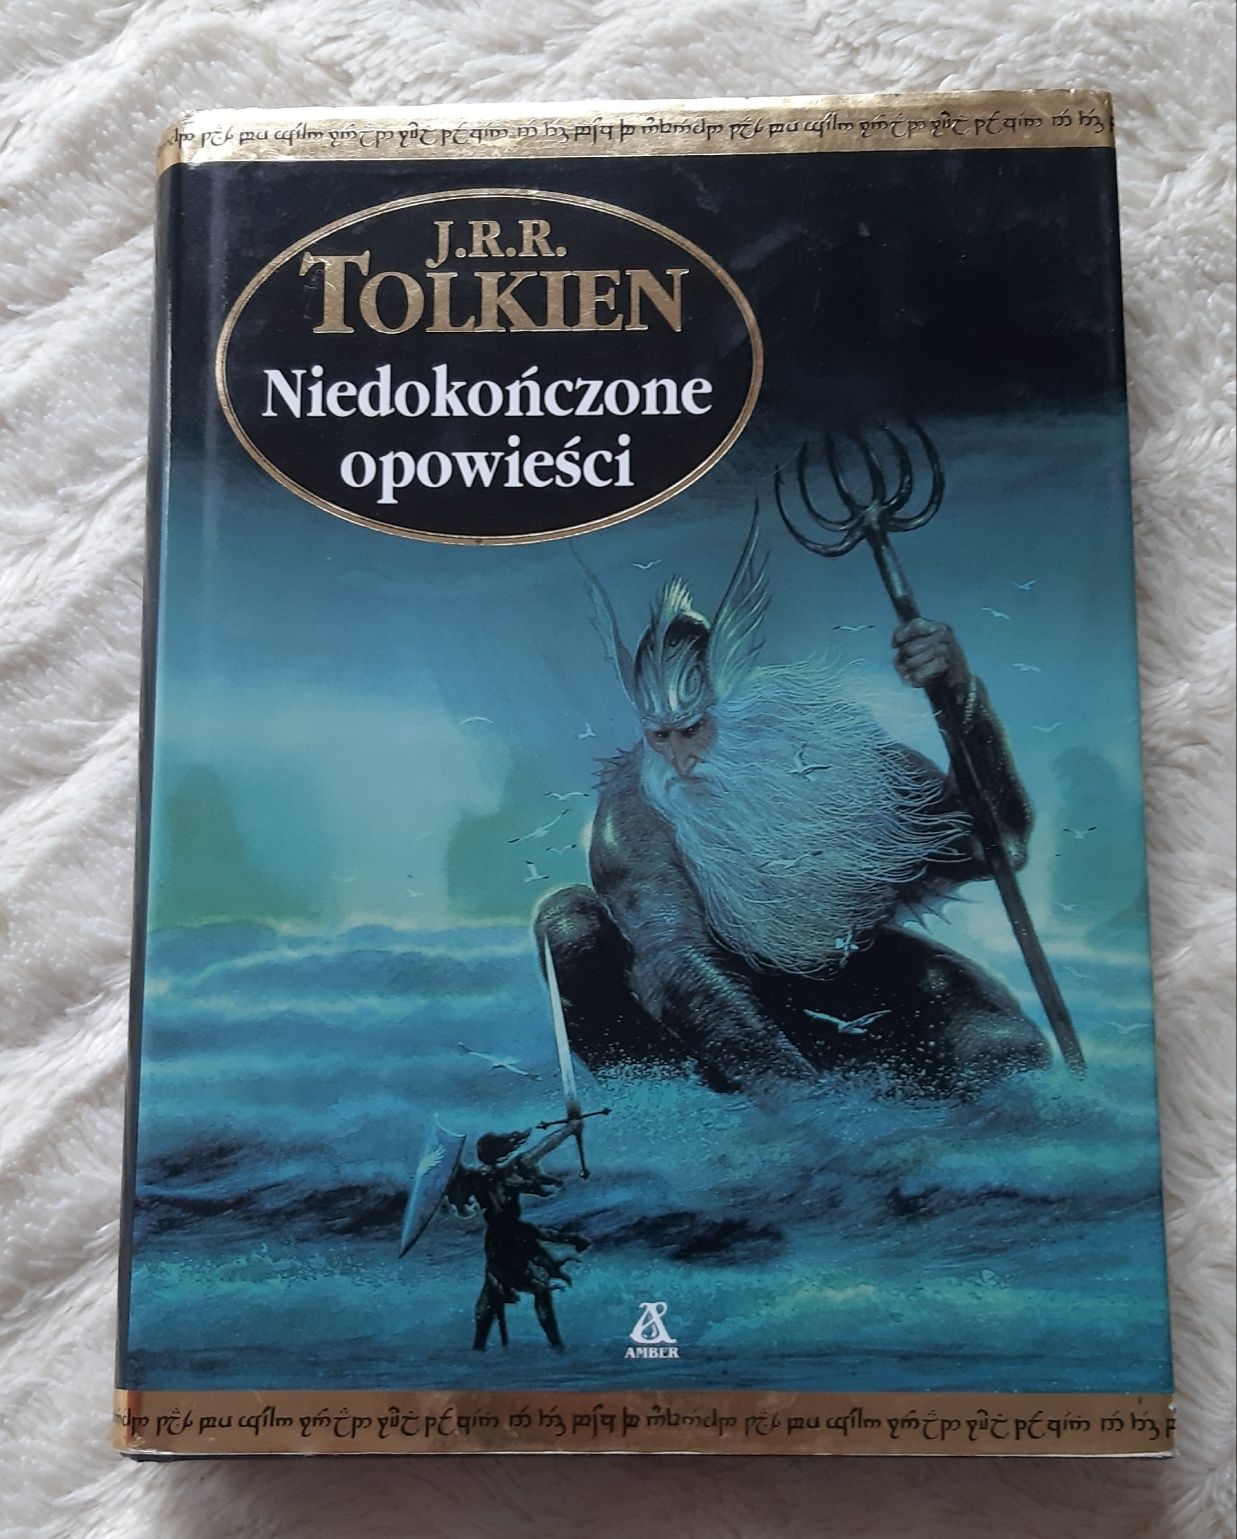 Tolkien Niedokonczone opowieści